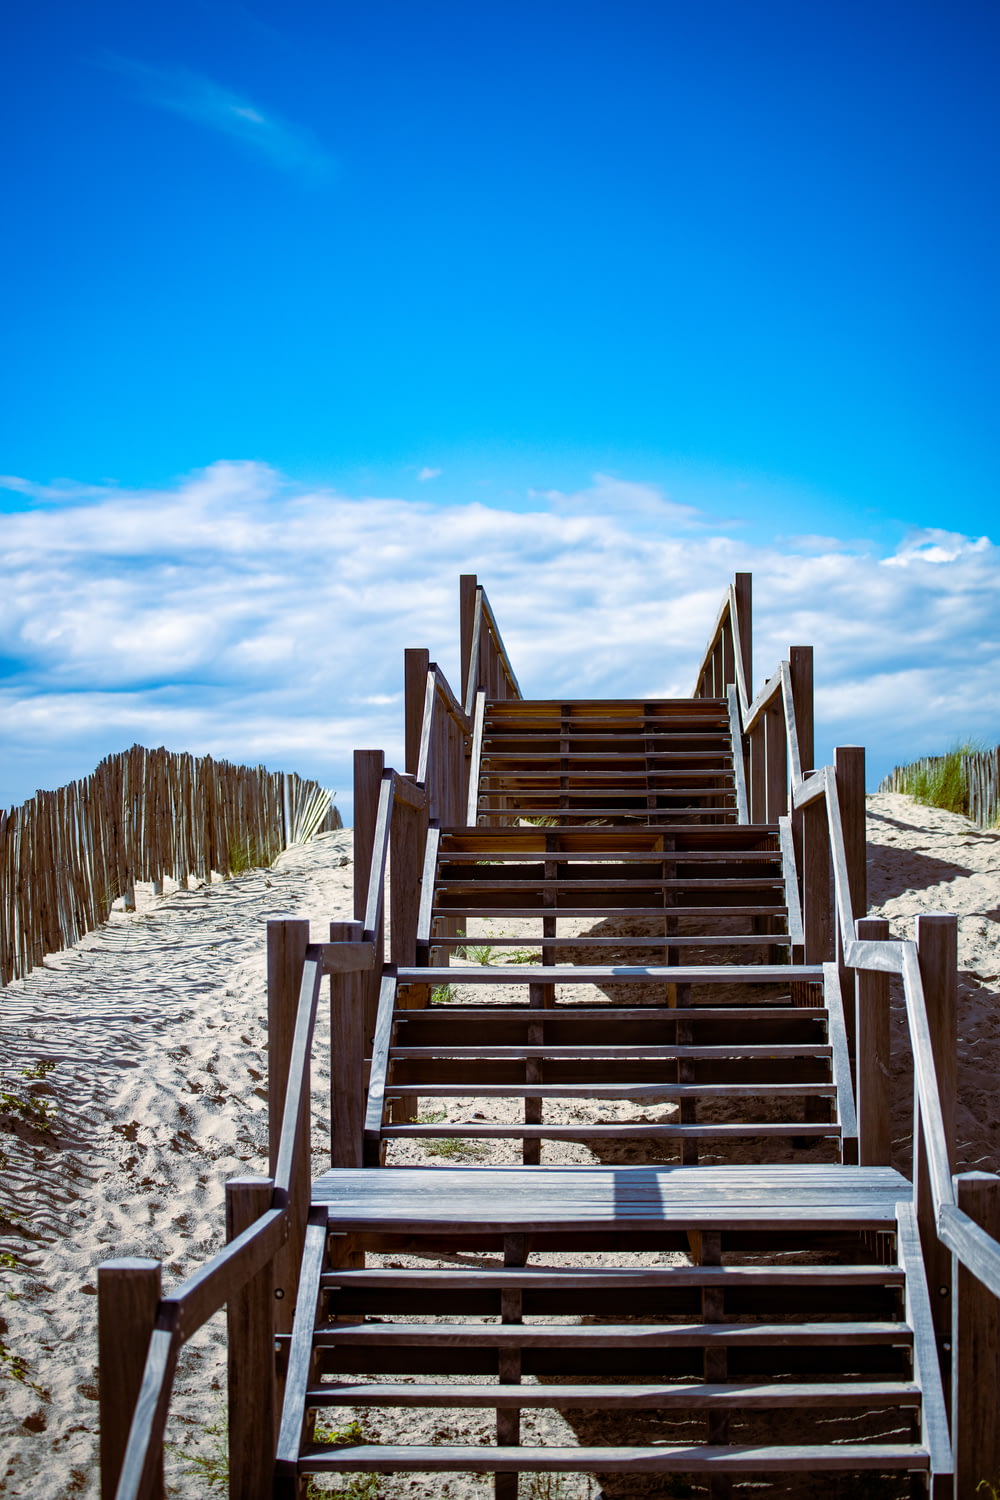 Escaleras de madera marrón sobre arena blanca durante el día